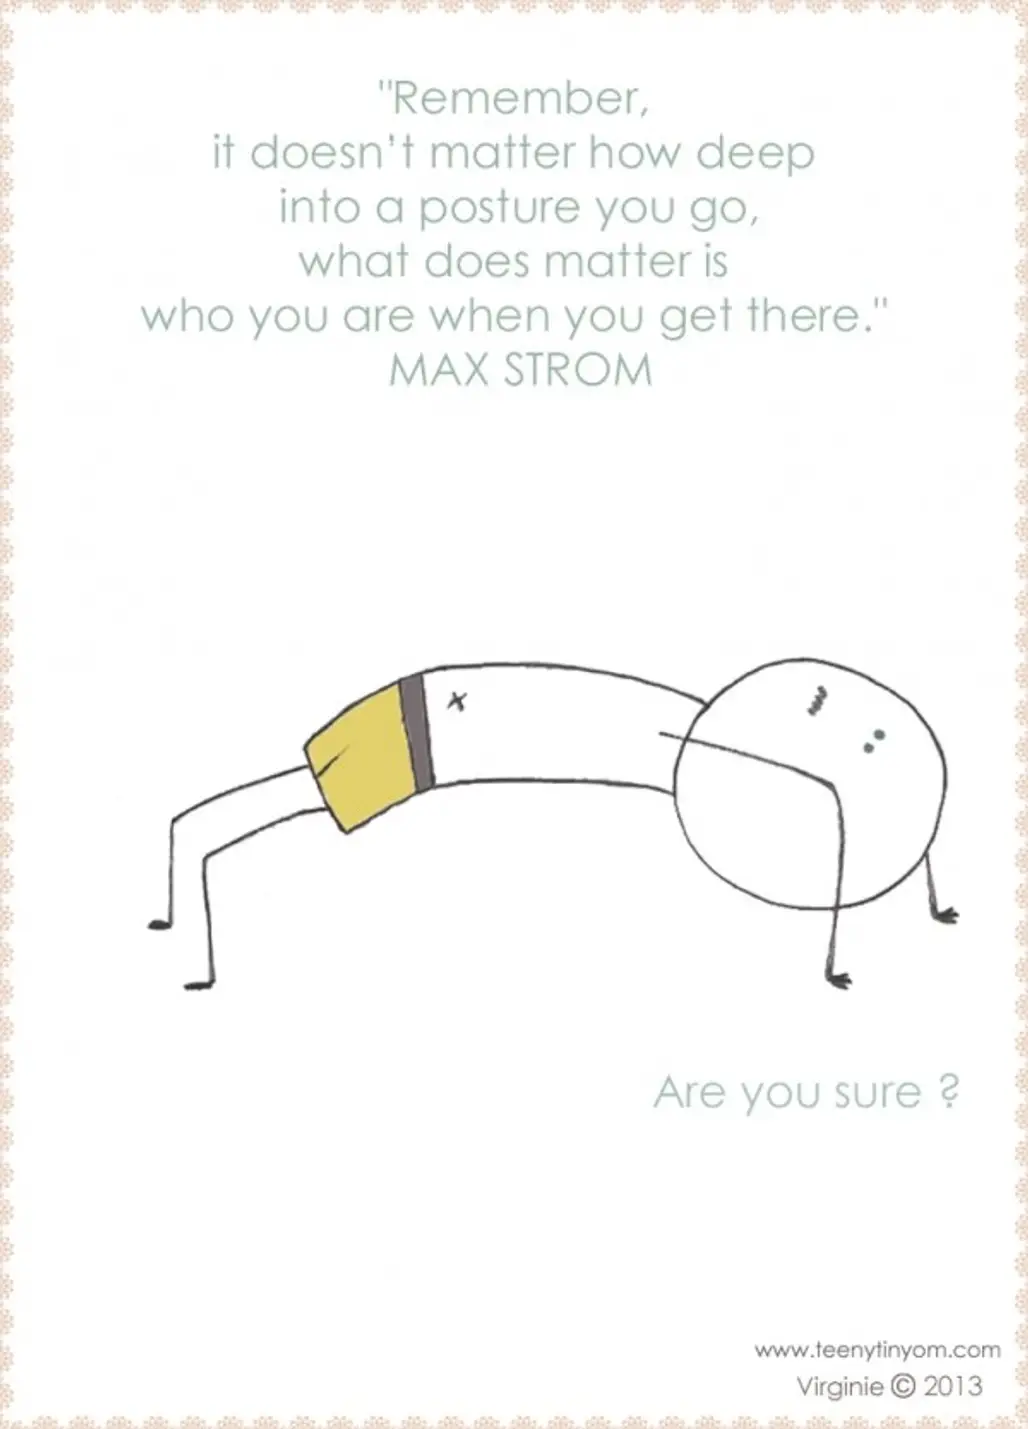 Max Strom